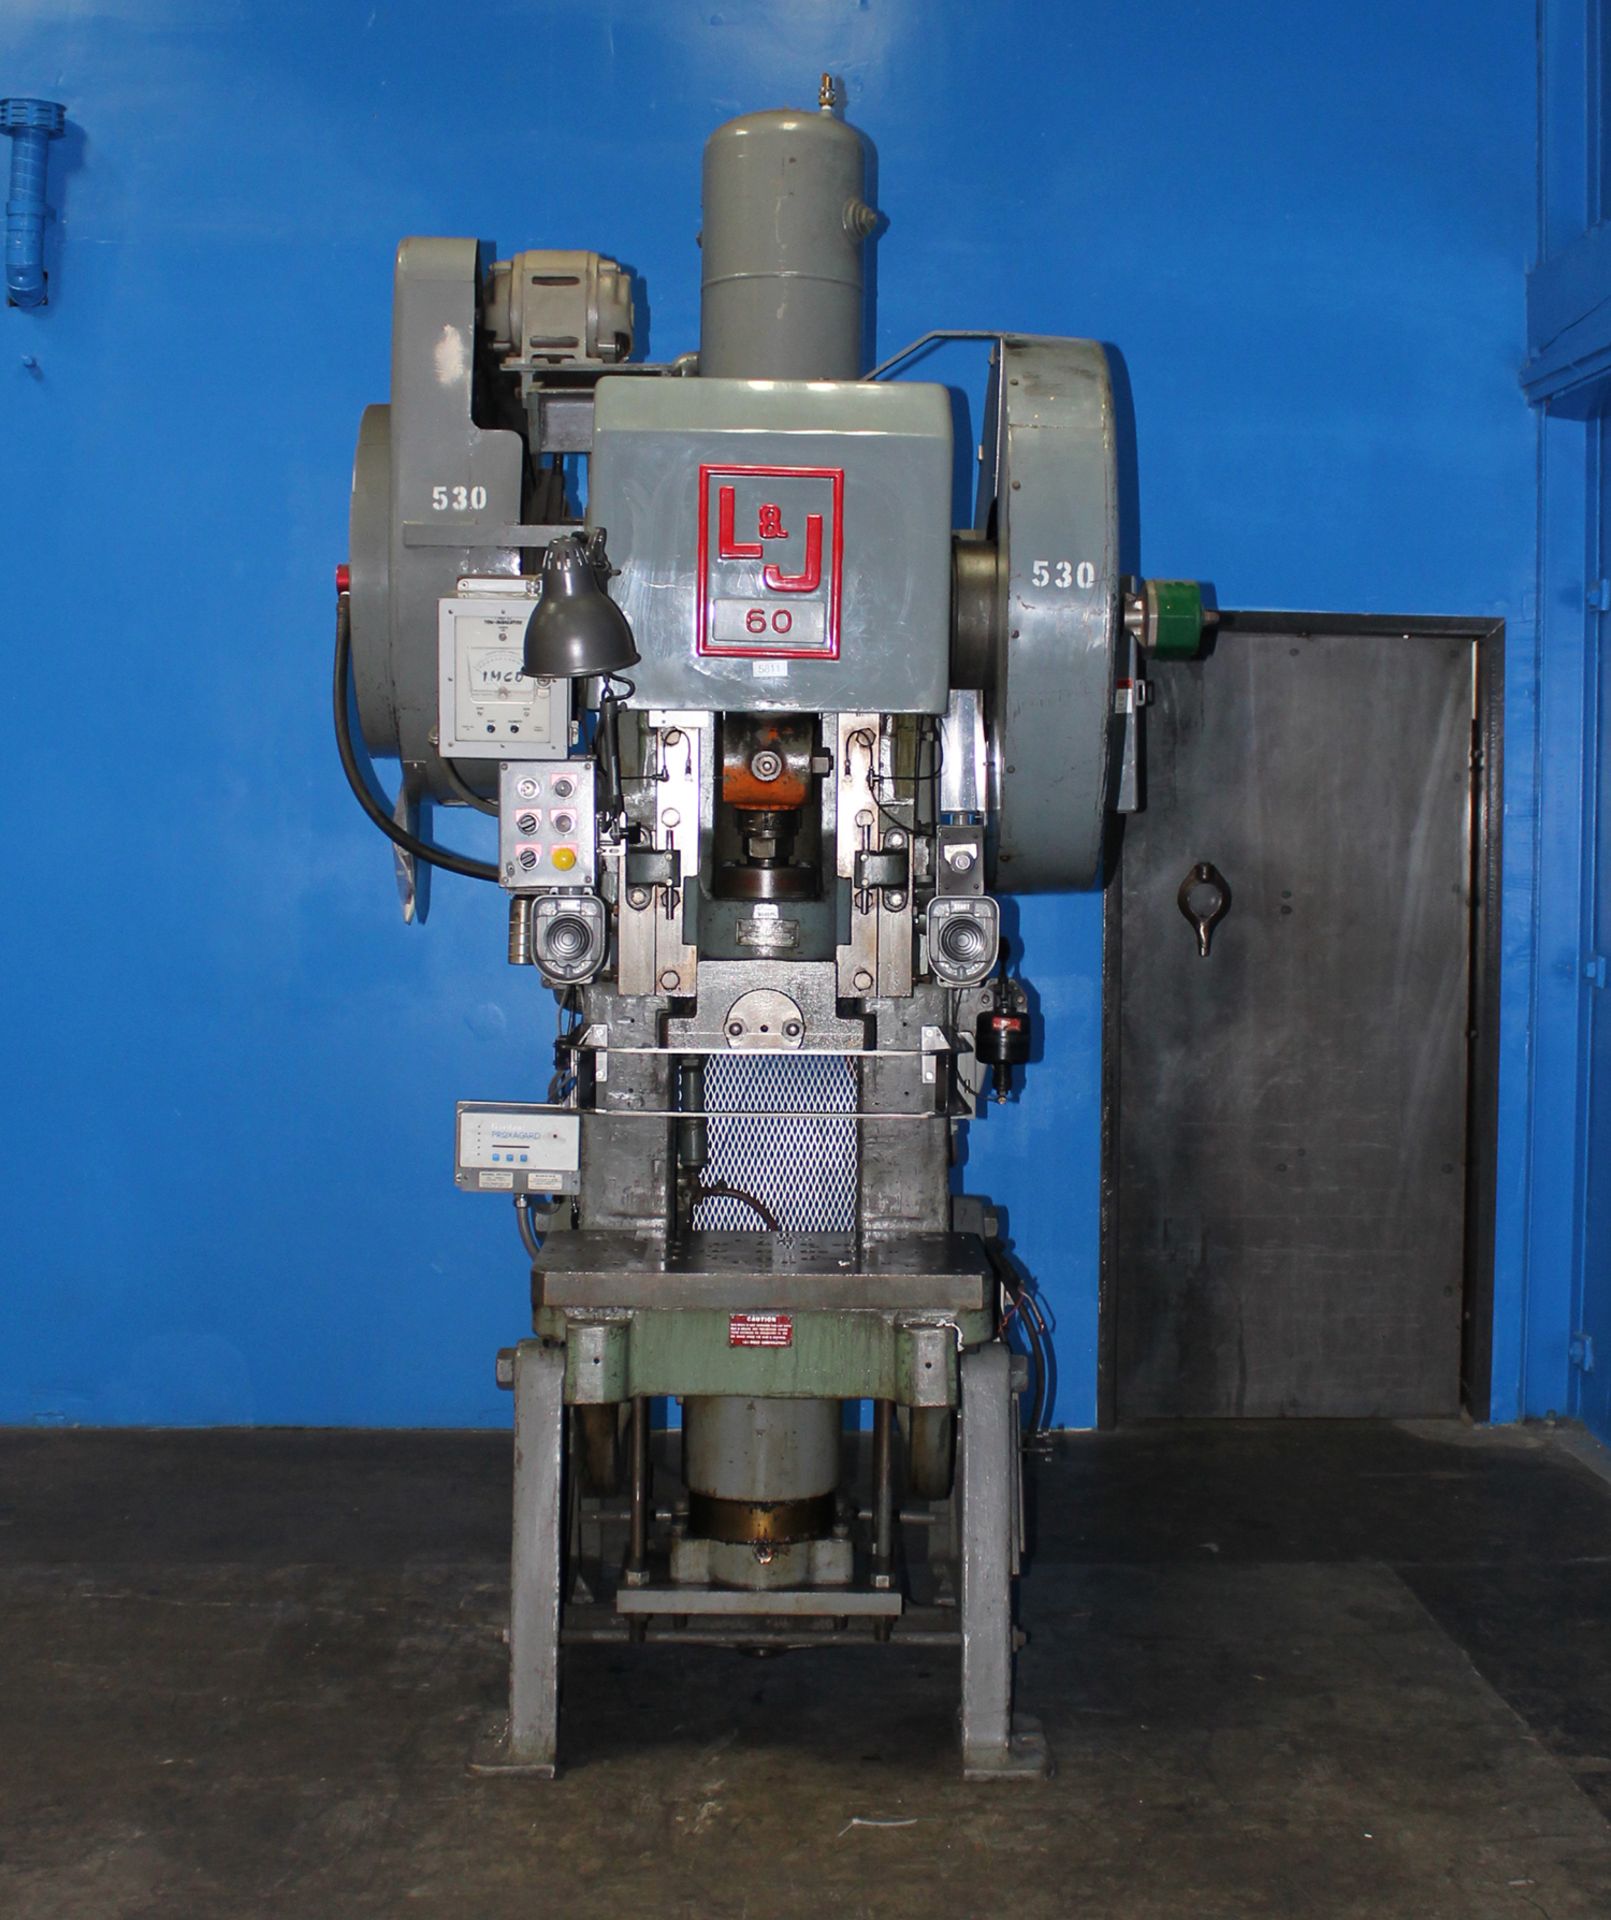 60-Ton L & J OBI Punch Press 30" x 18" Metal Forming Machine - Located In: Huntington Park, CA